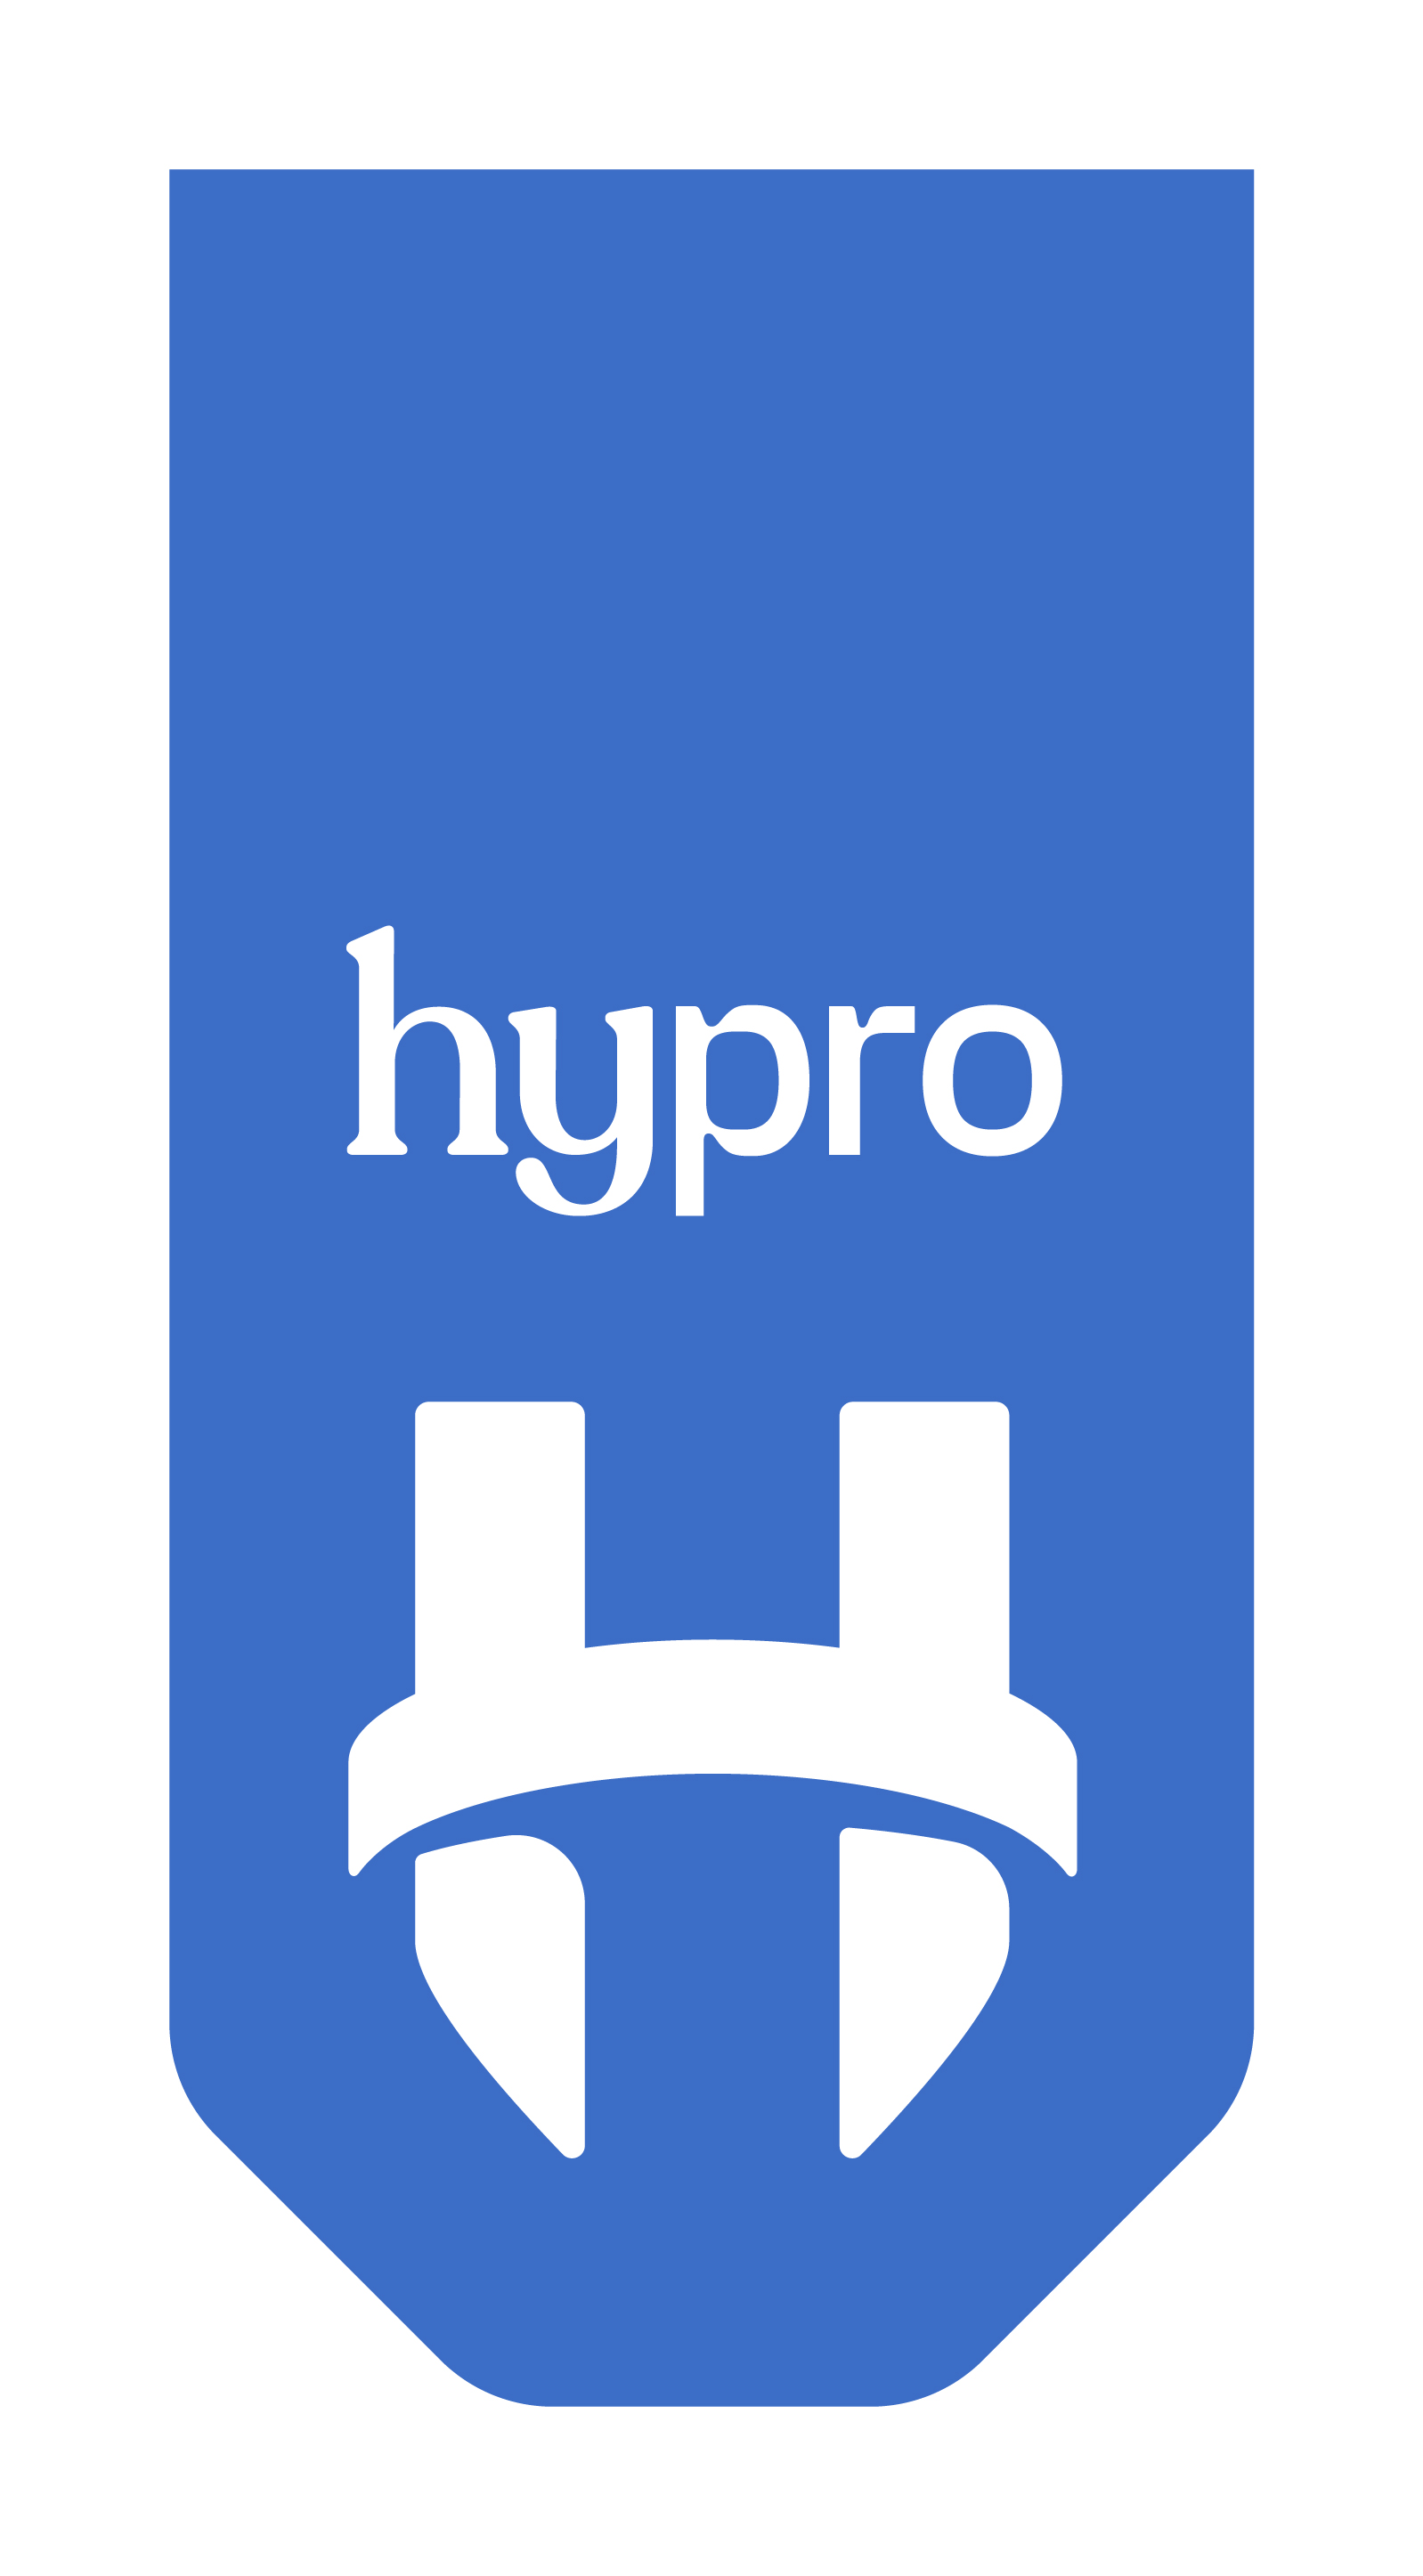 Hypro v2